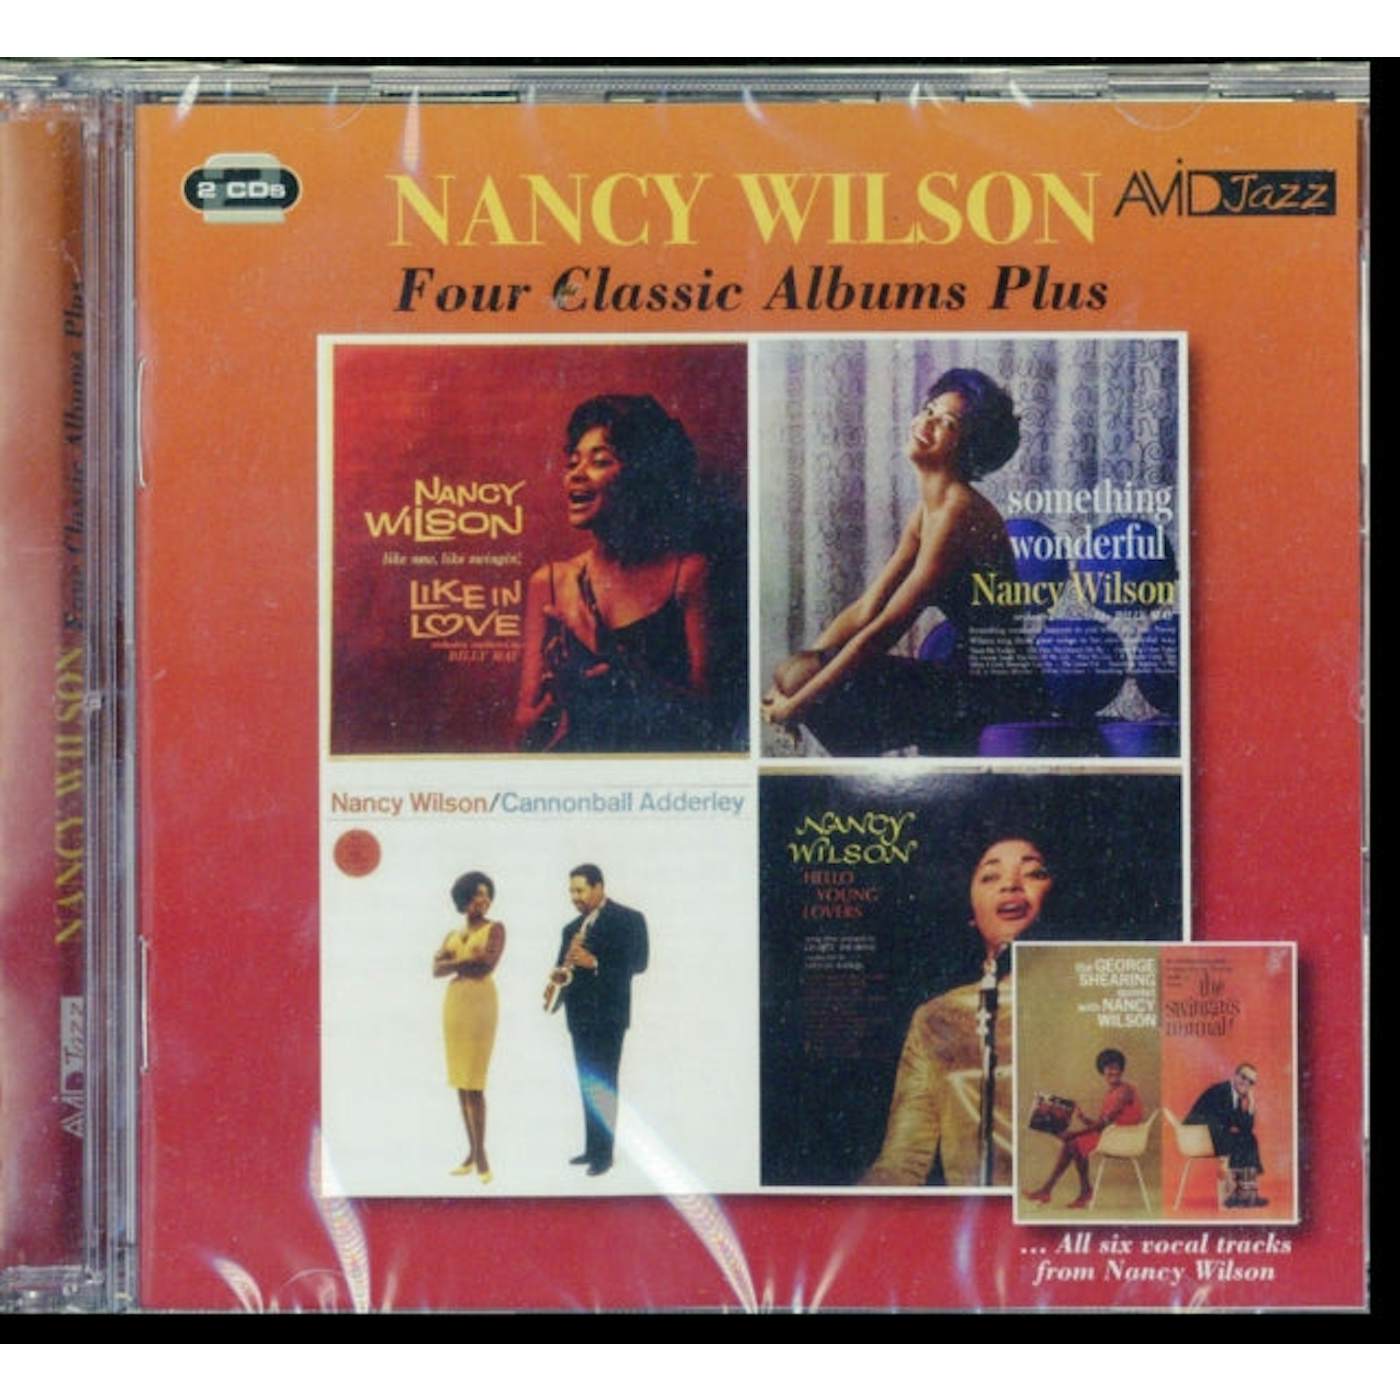 Nancy Wilson CD - Four Classic Albums Plus